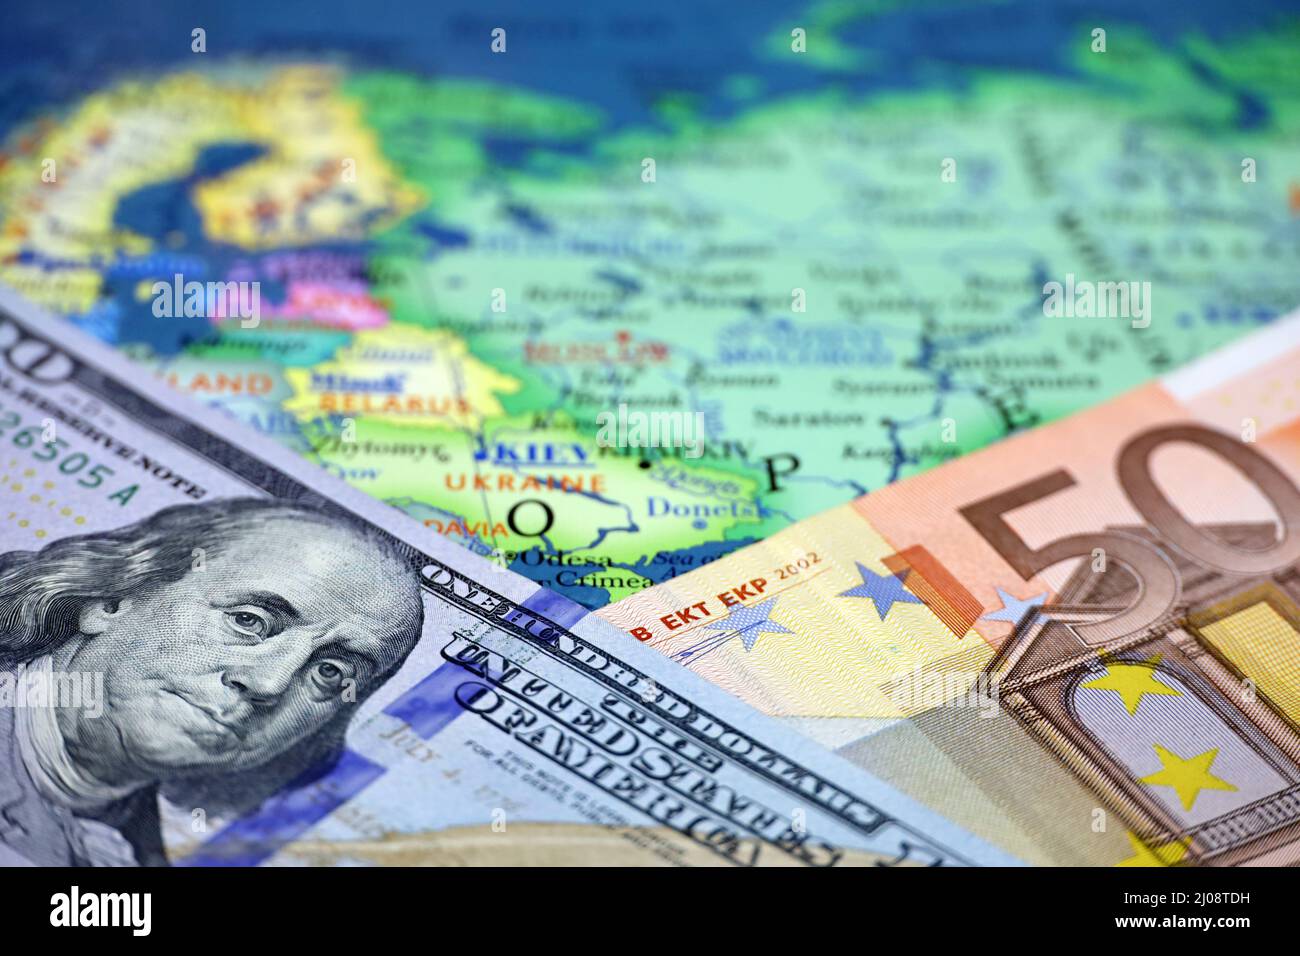 Dollars AMÉRICAINS et billets en euros sur la carte de la Russie et de l'Ukraine. Concept des États-Unis et soutien européen de Kiev Banque D'Images